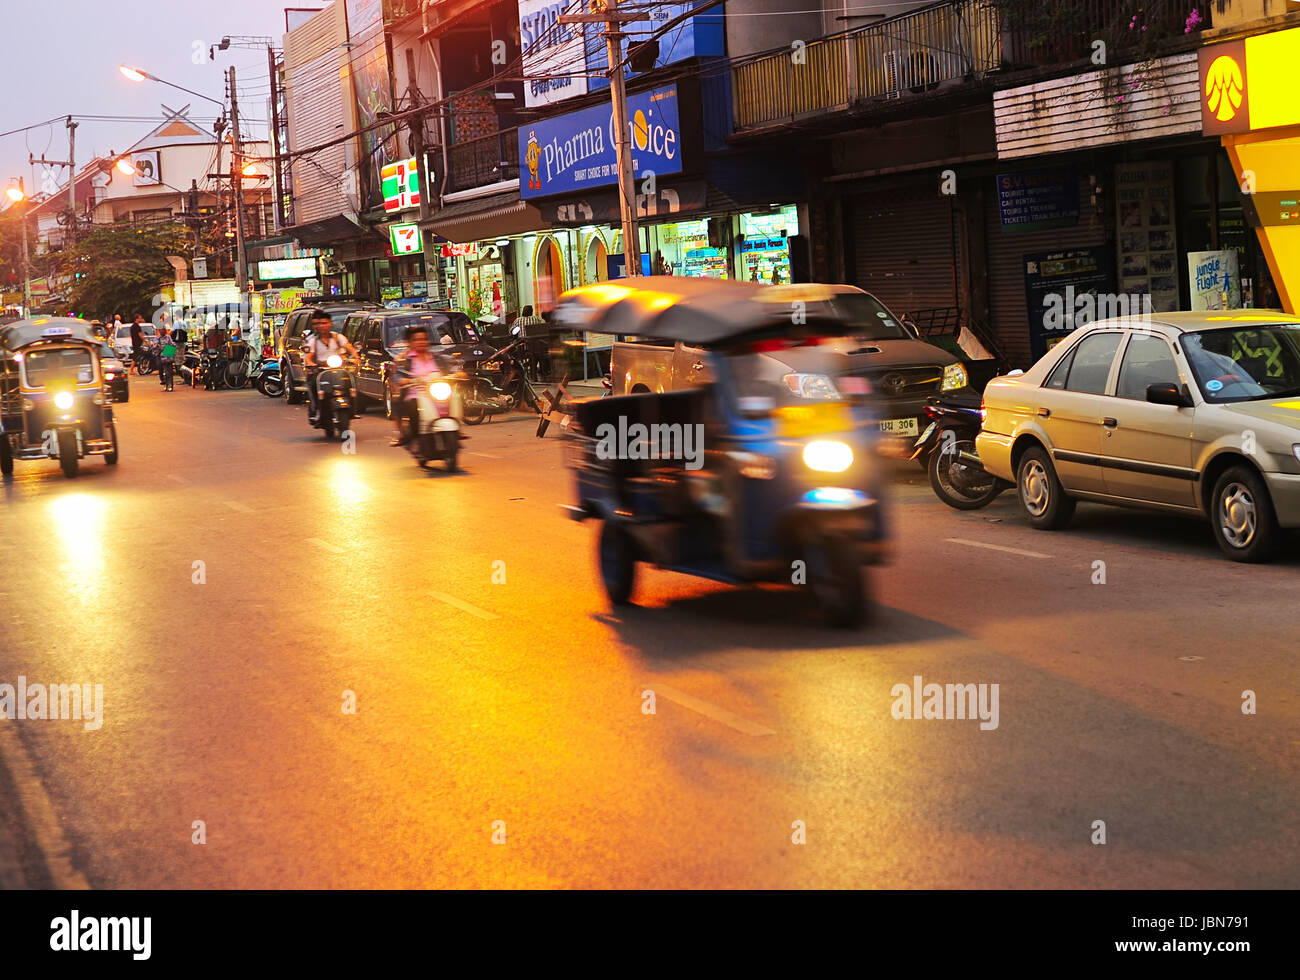 CHIANG MAI, THAILAND - 26. Februar 2013: Regen Verkehr auf einer Straße in der Abenddämmerung in Chiang Mai. Chiang Mai ist die größte und kulturell bedeutende Stadt im Norden Thailands Stockfoto